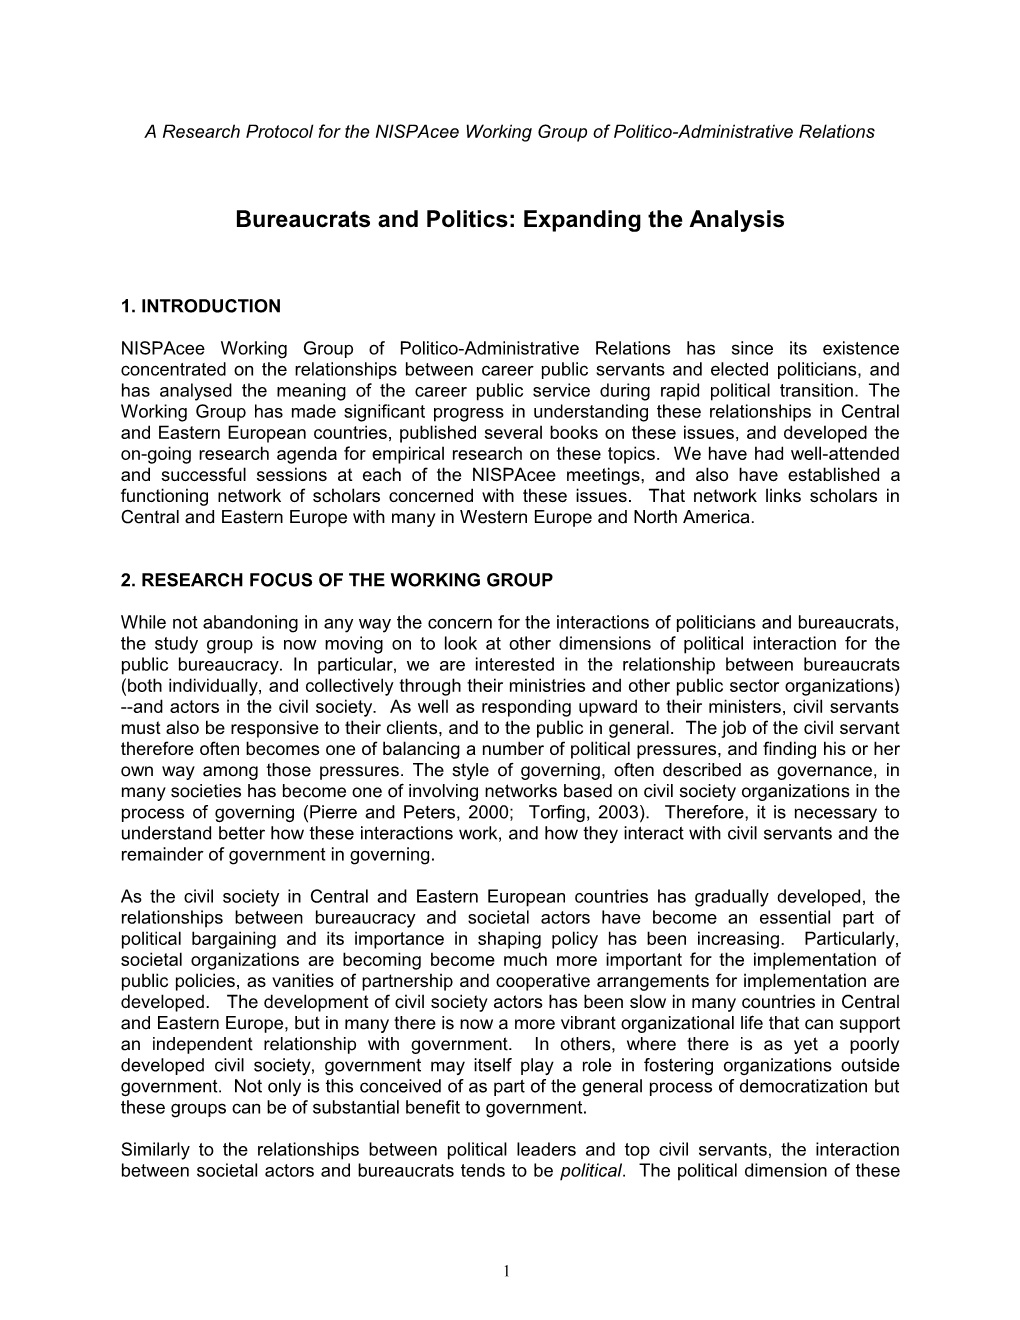 Bureaucrats and Politics: Expanding the Analysis